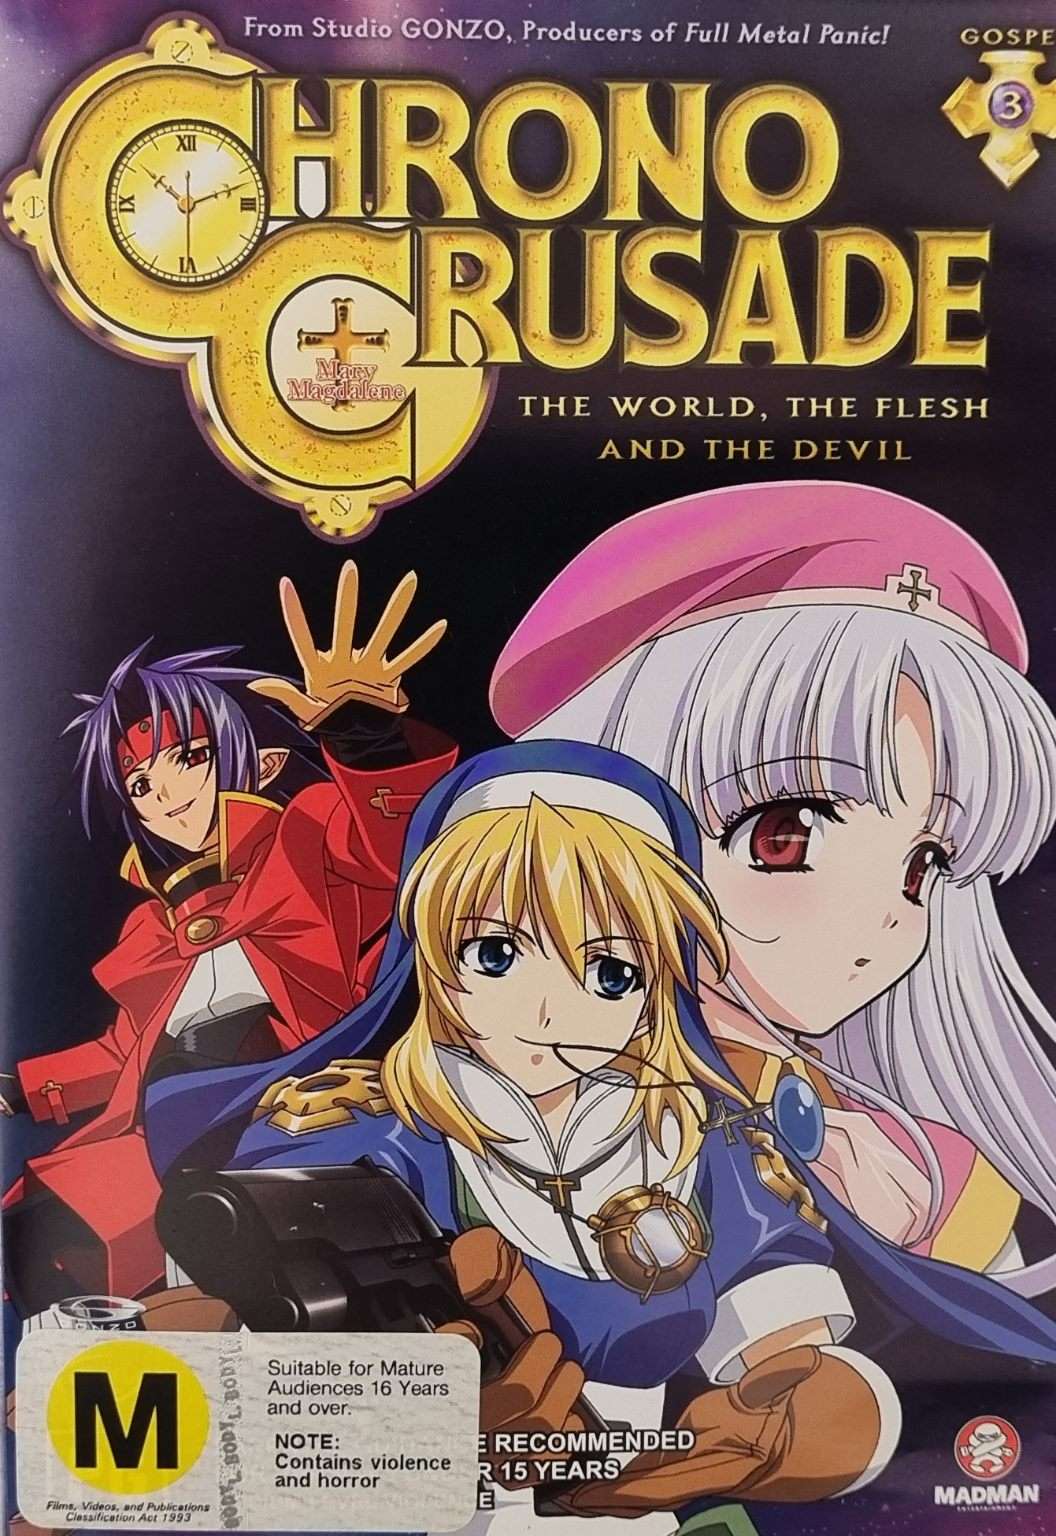 Chrono Crusade: Gospel 3